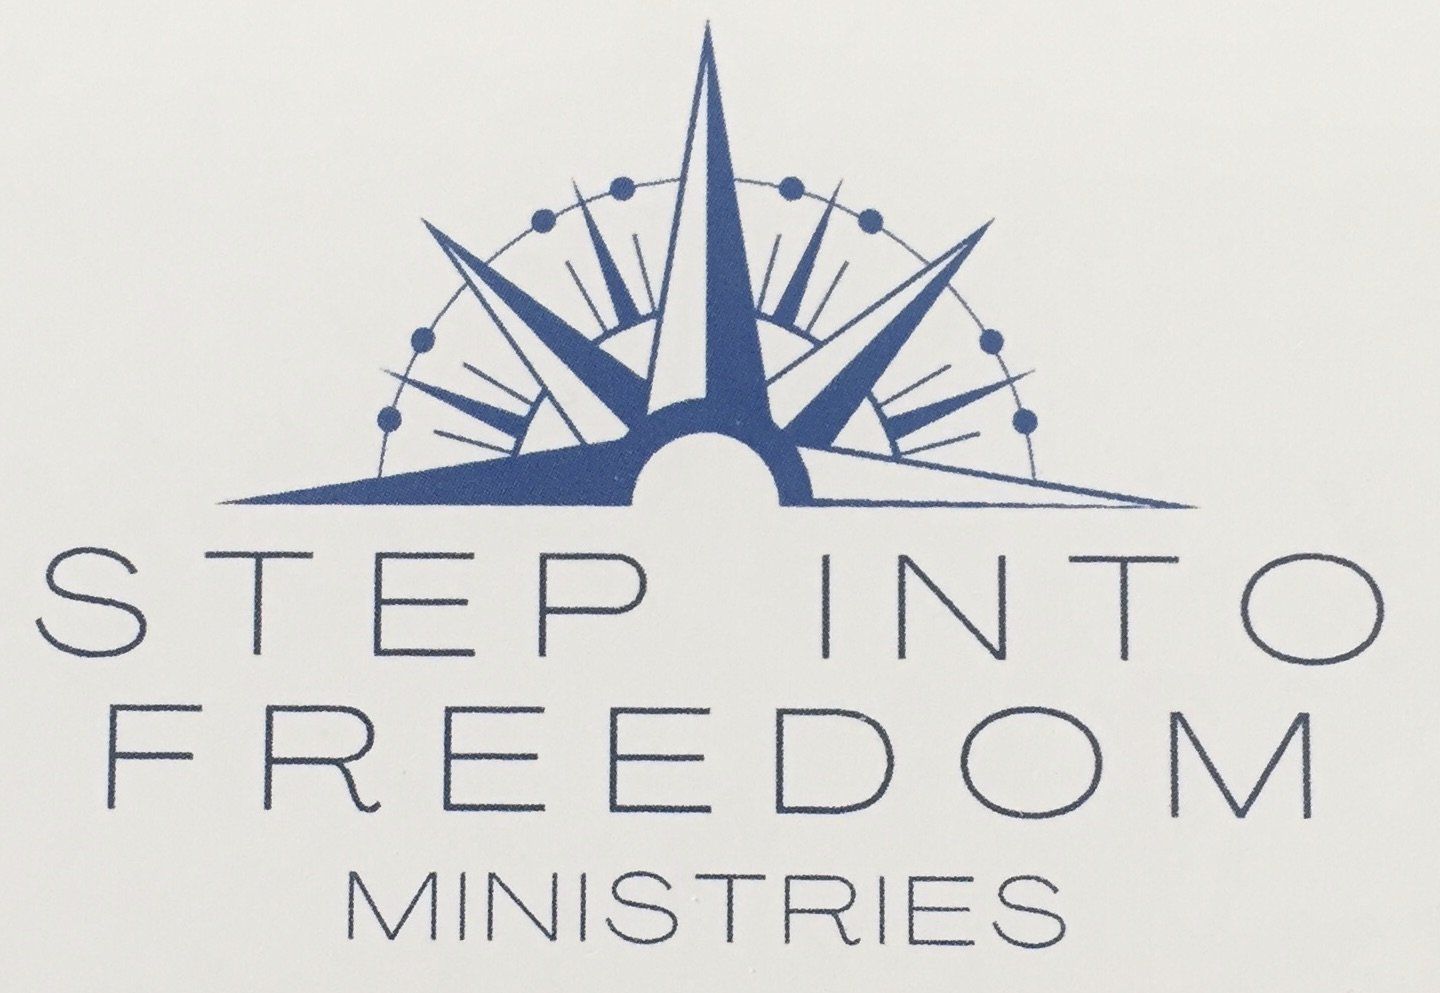 Step Into Freedom Logo